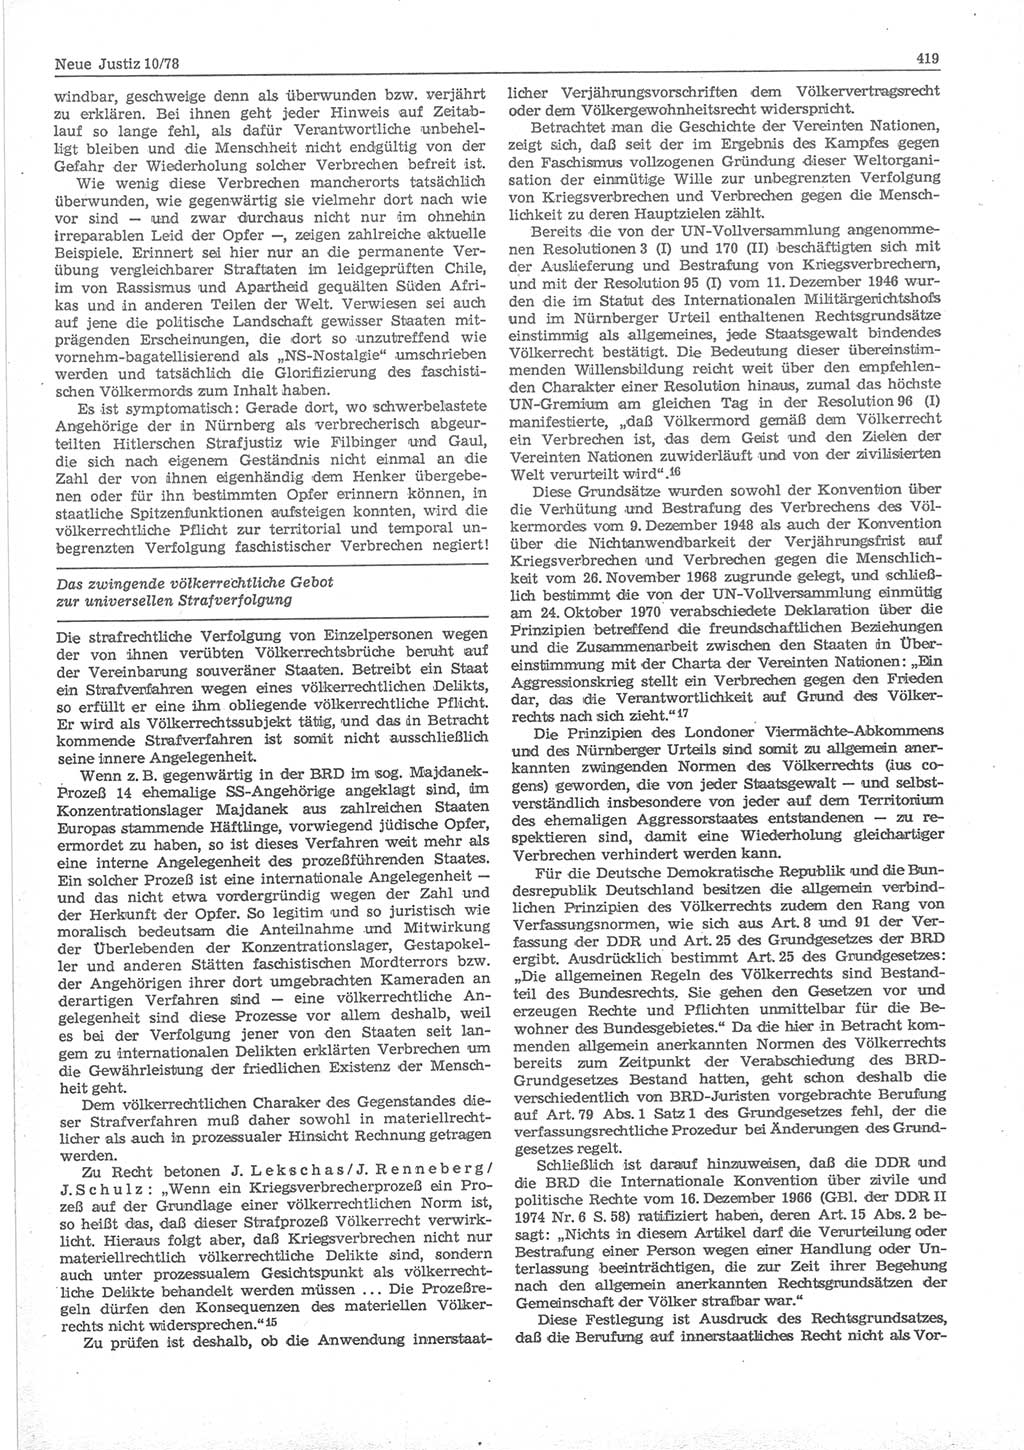 Neue Justiz (NJ), Zeitschrift für sozialistisches Recht und Gesetzlichkeit [Deutsche Demokratische Republik (DDR)], 32. Jahrgang 1978, Seite 419 (NJ DDR 1978, S. 419)